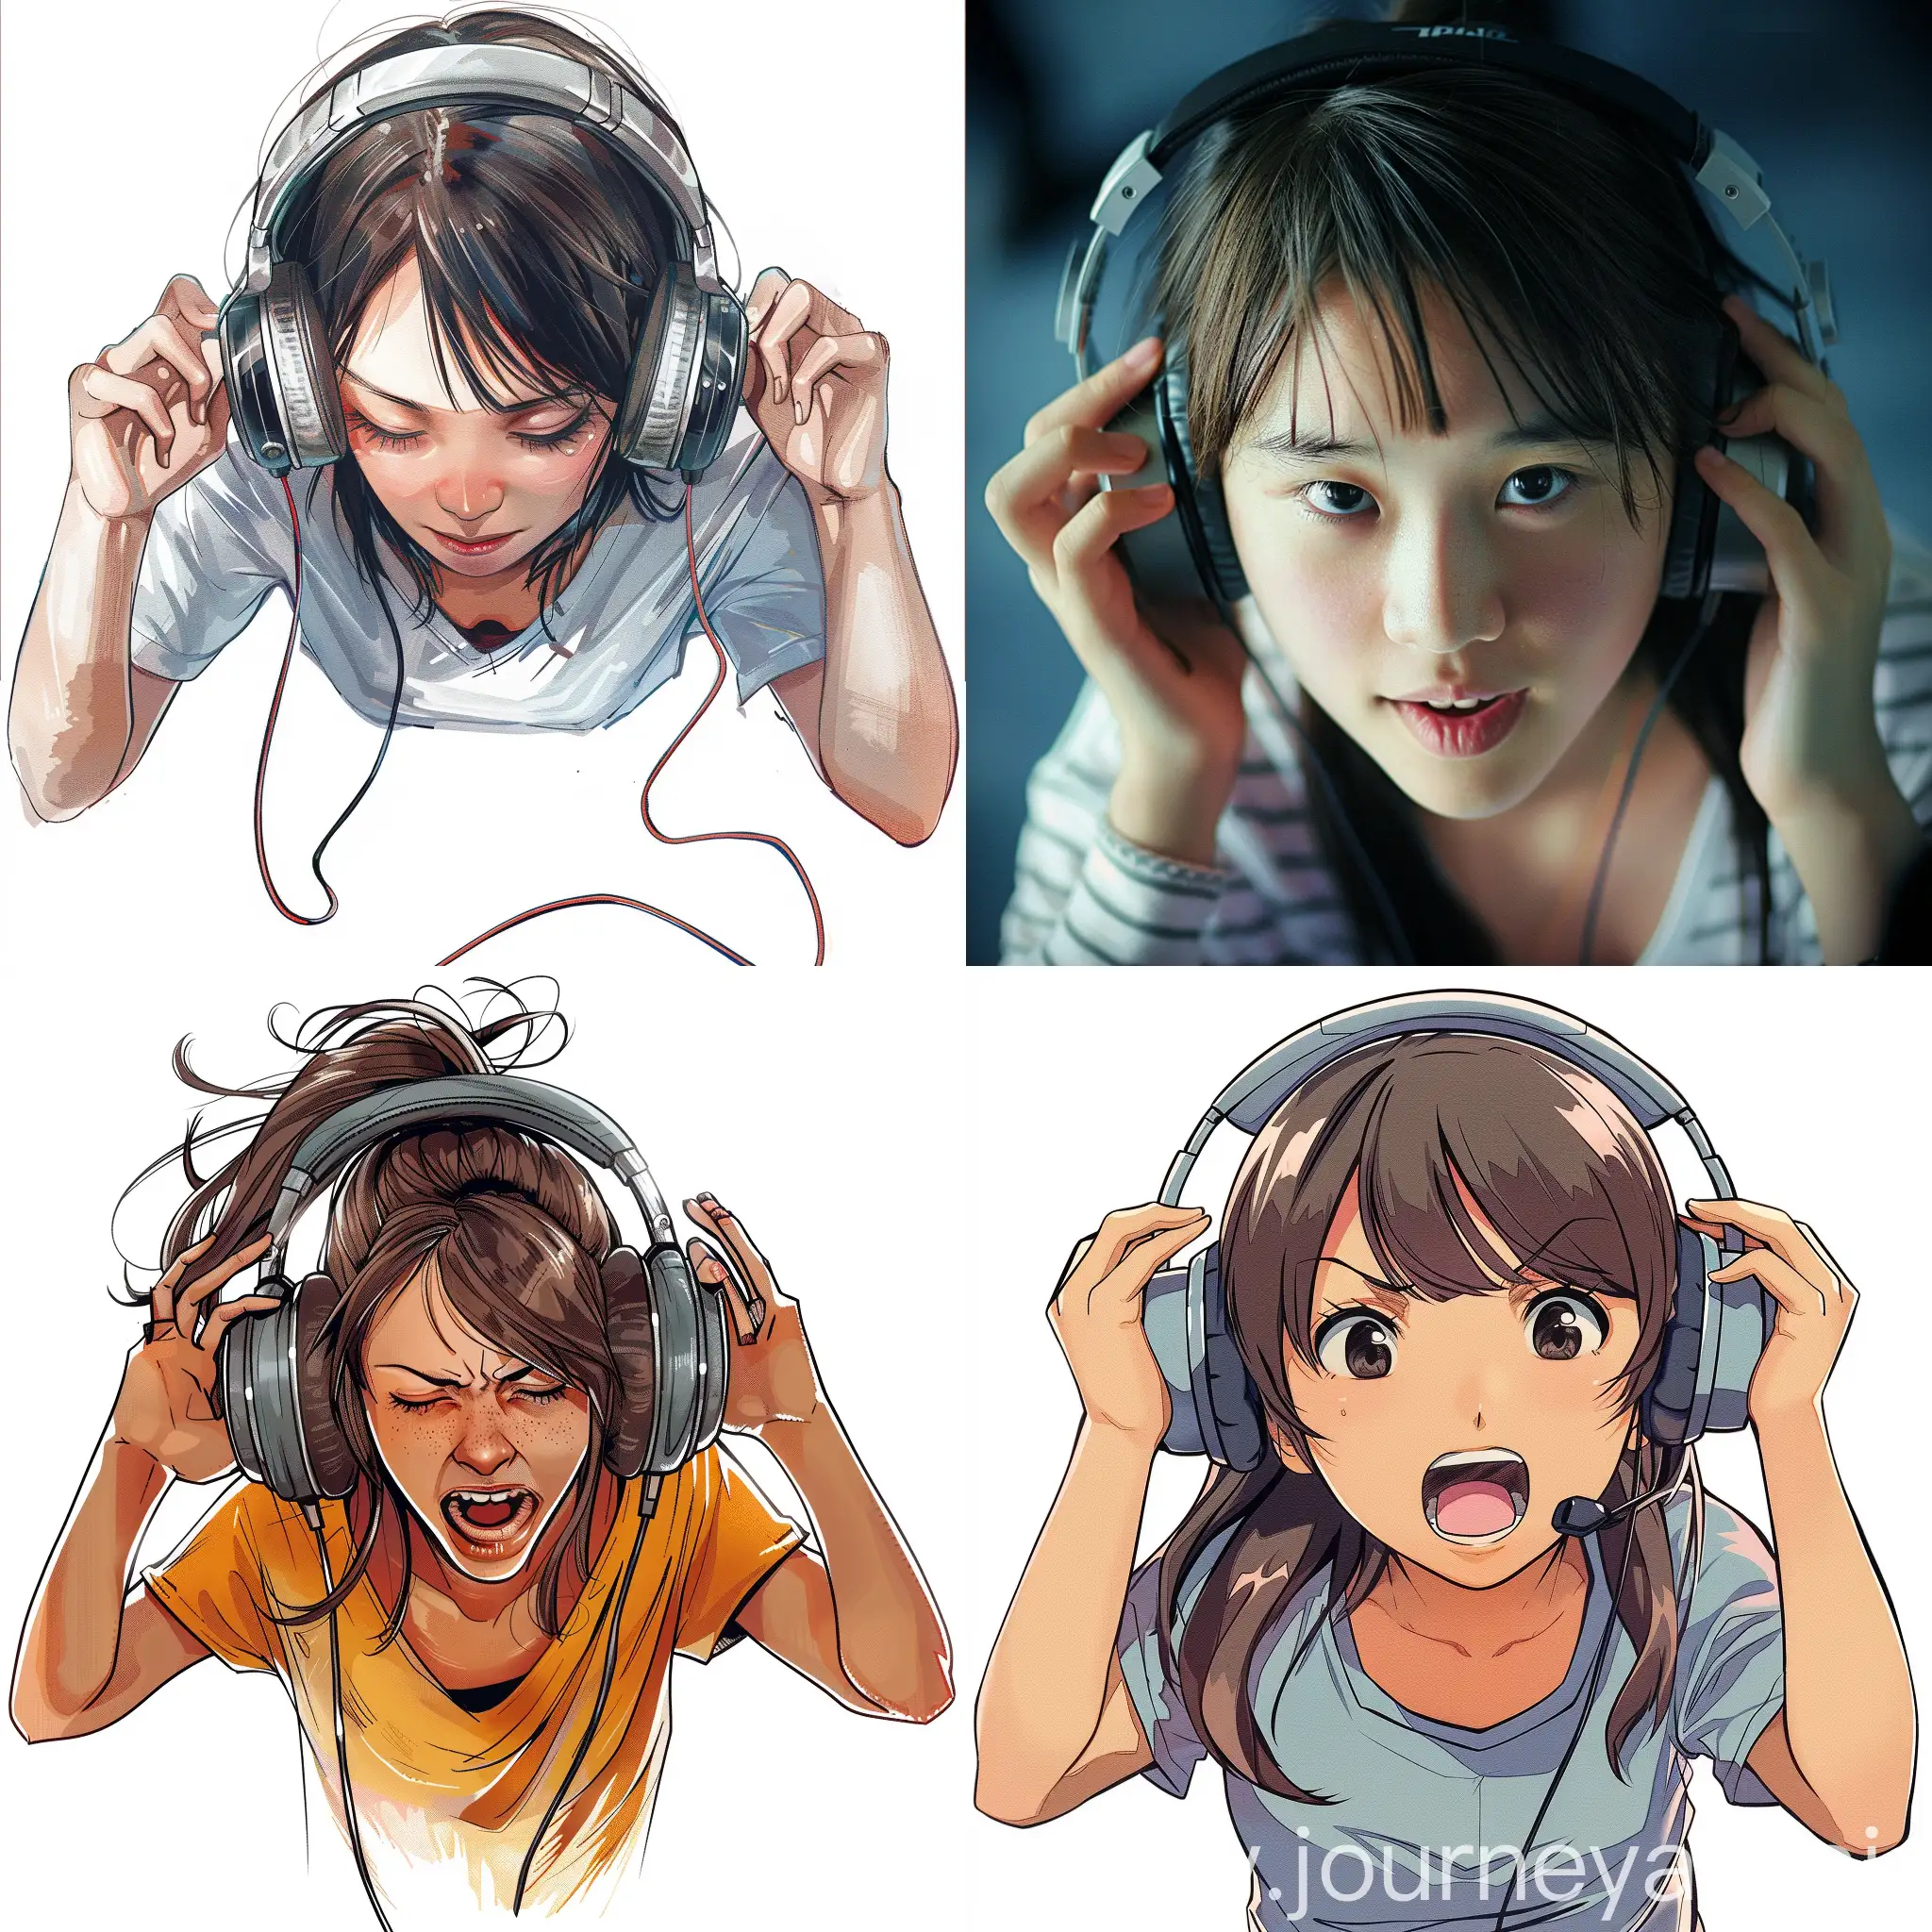 Young-Girl-Enjoying-Music-with-Headphones